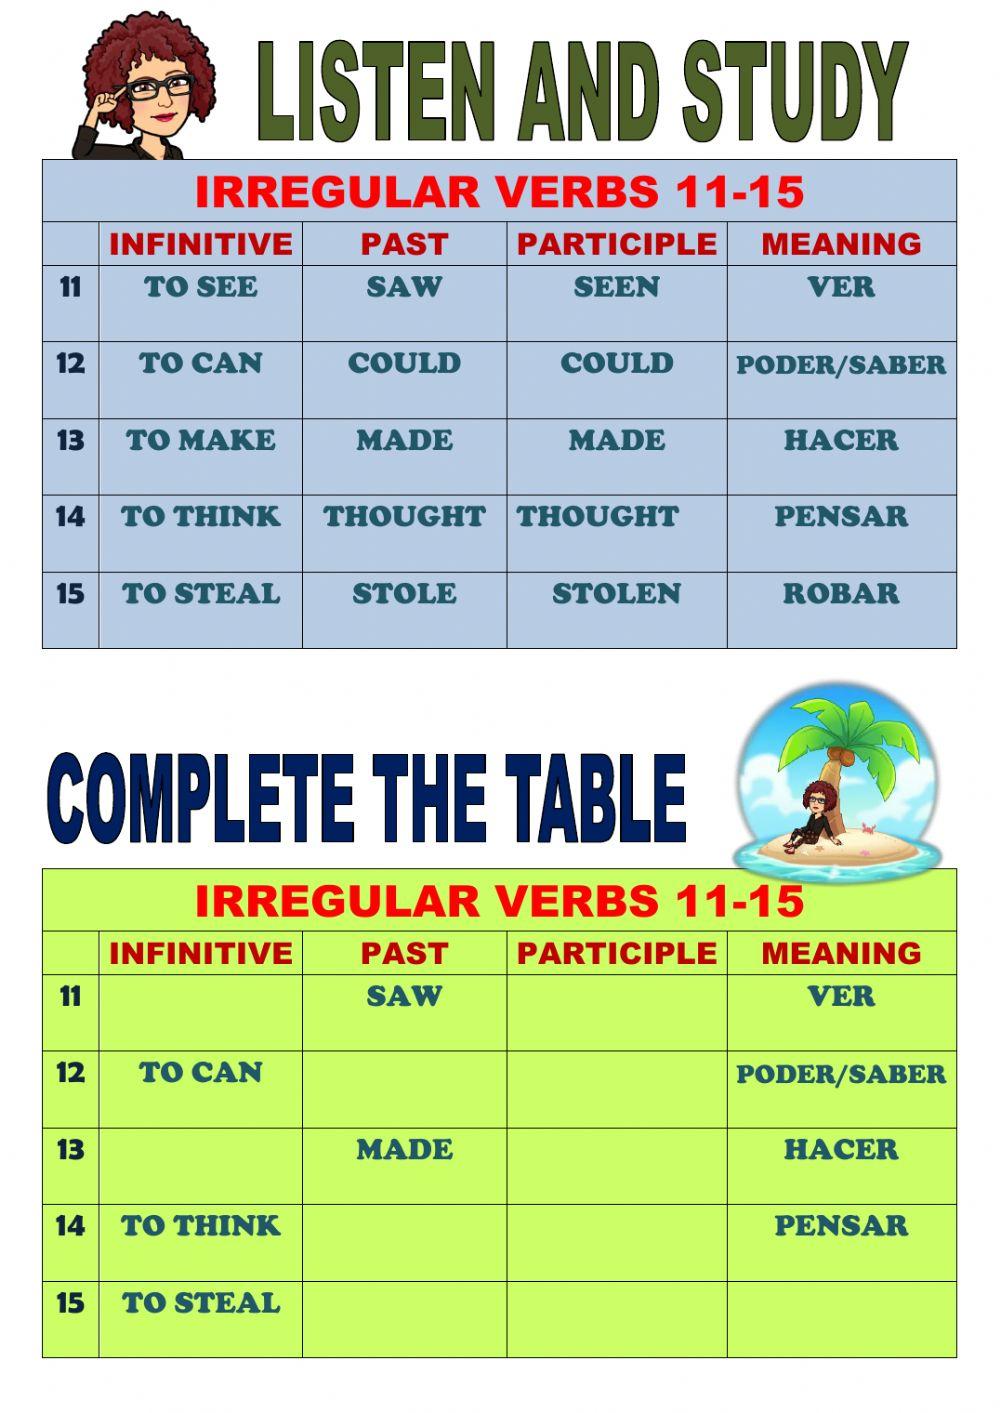 Listen and study 11-15 irregular verbs